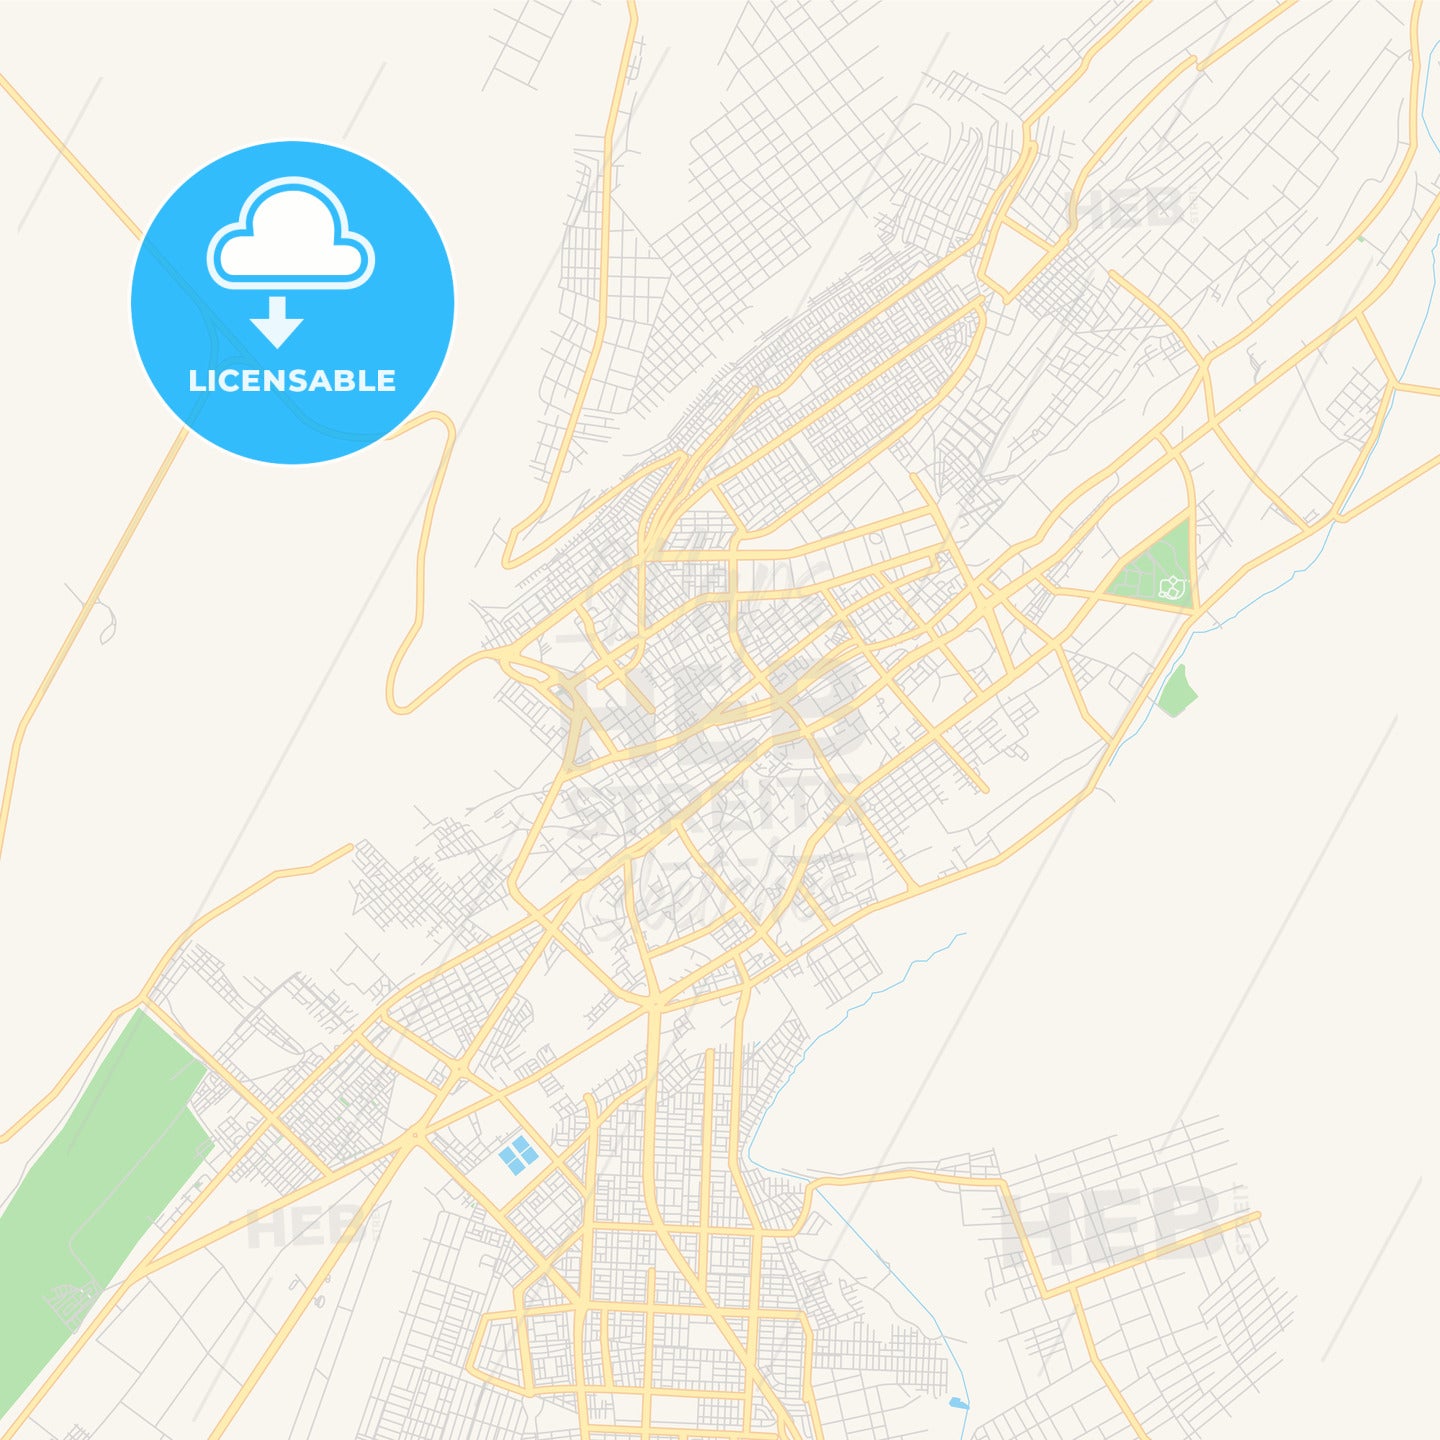 Printable street map of Tacna, Peru